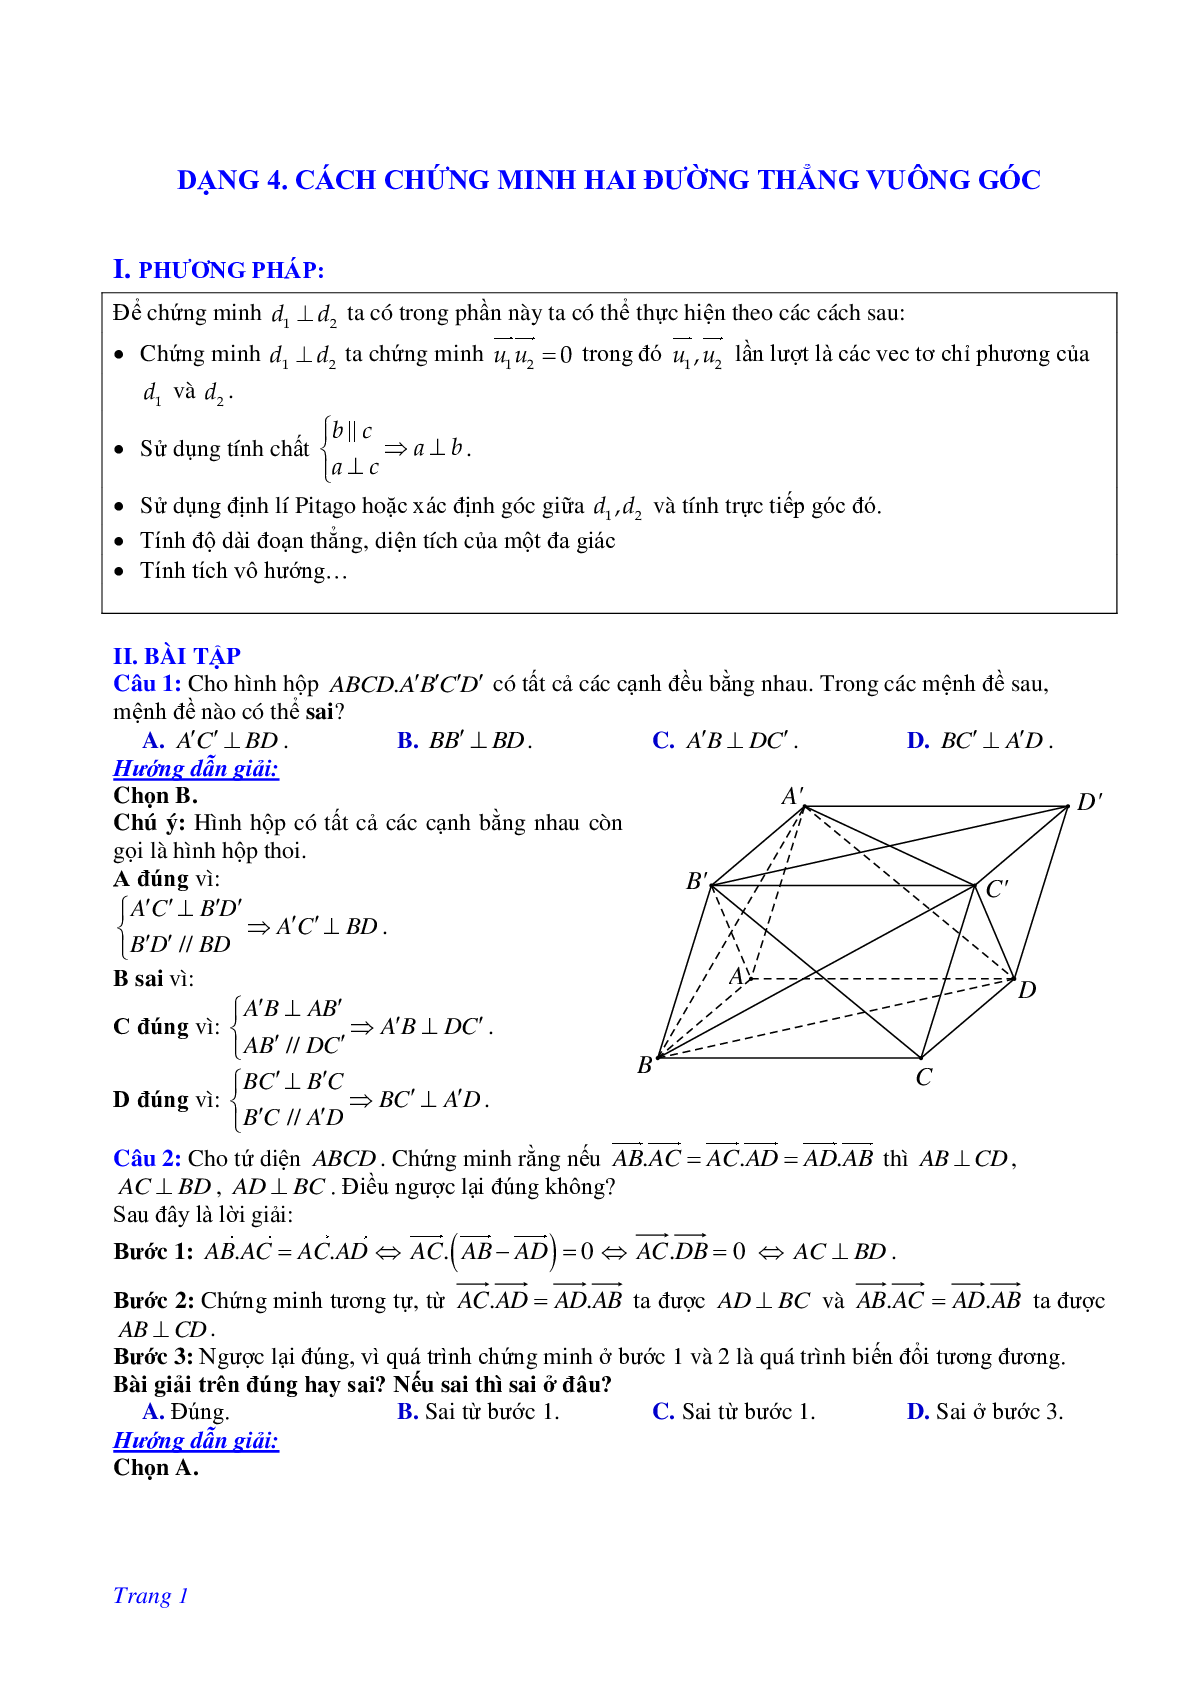 Phương pháp giải và bài tập về Cách chứng minh hai đường thẳng vuông góc (trang 1)